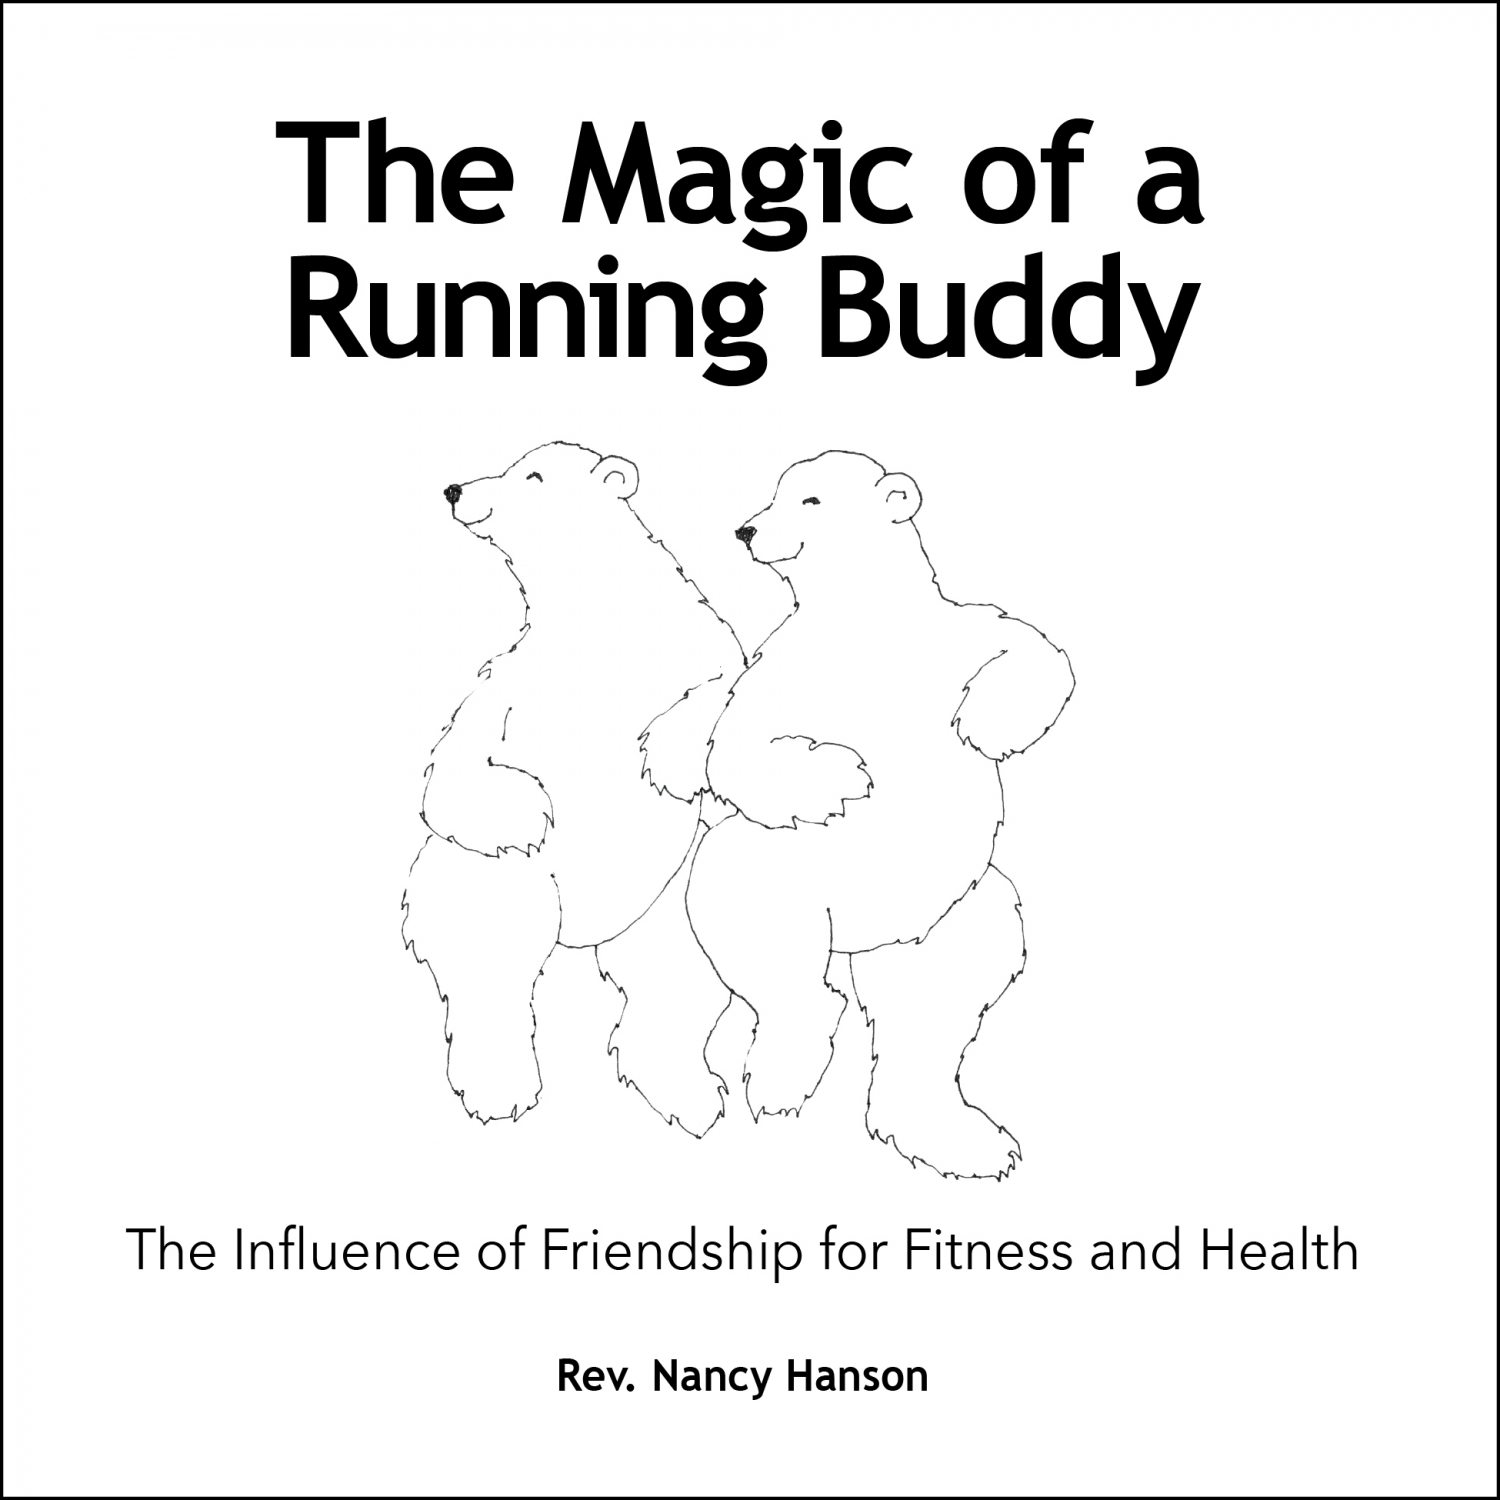 The Running Buddy